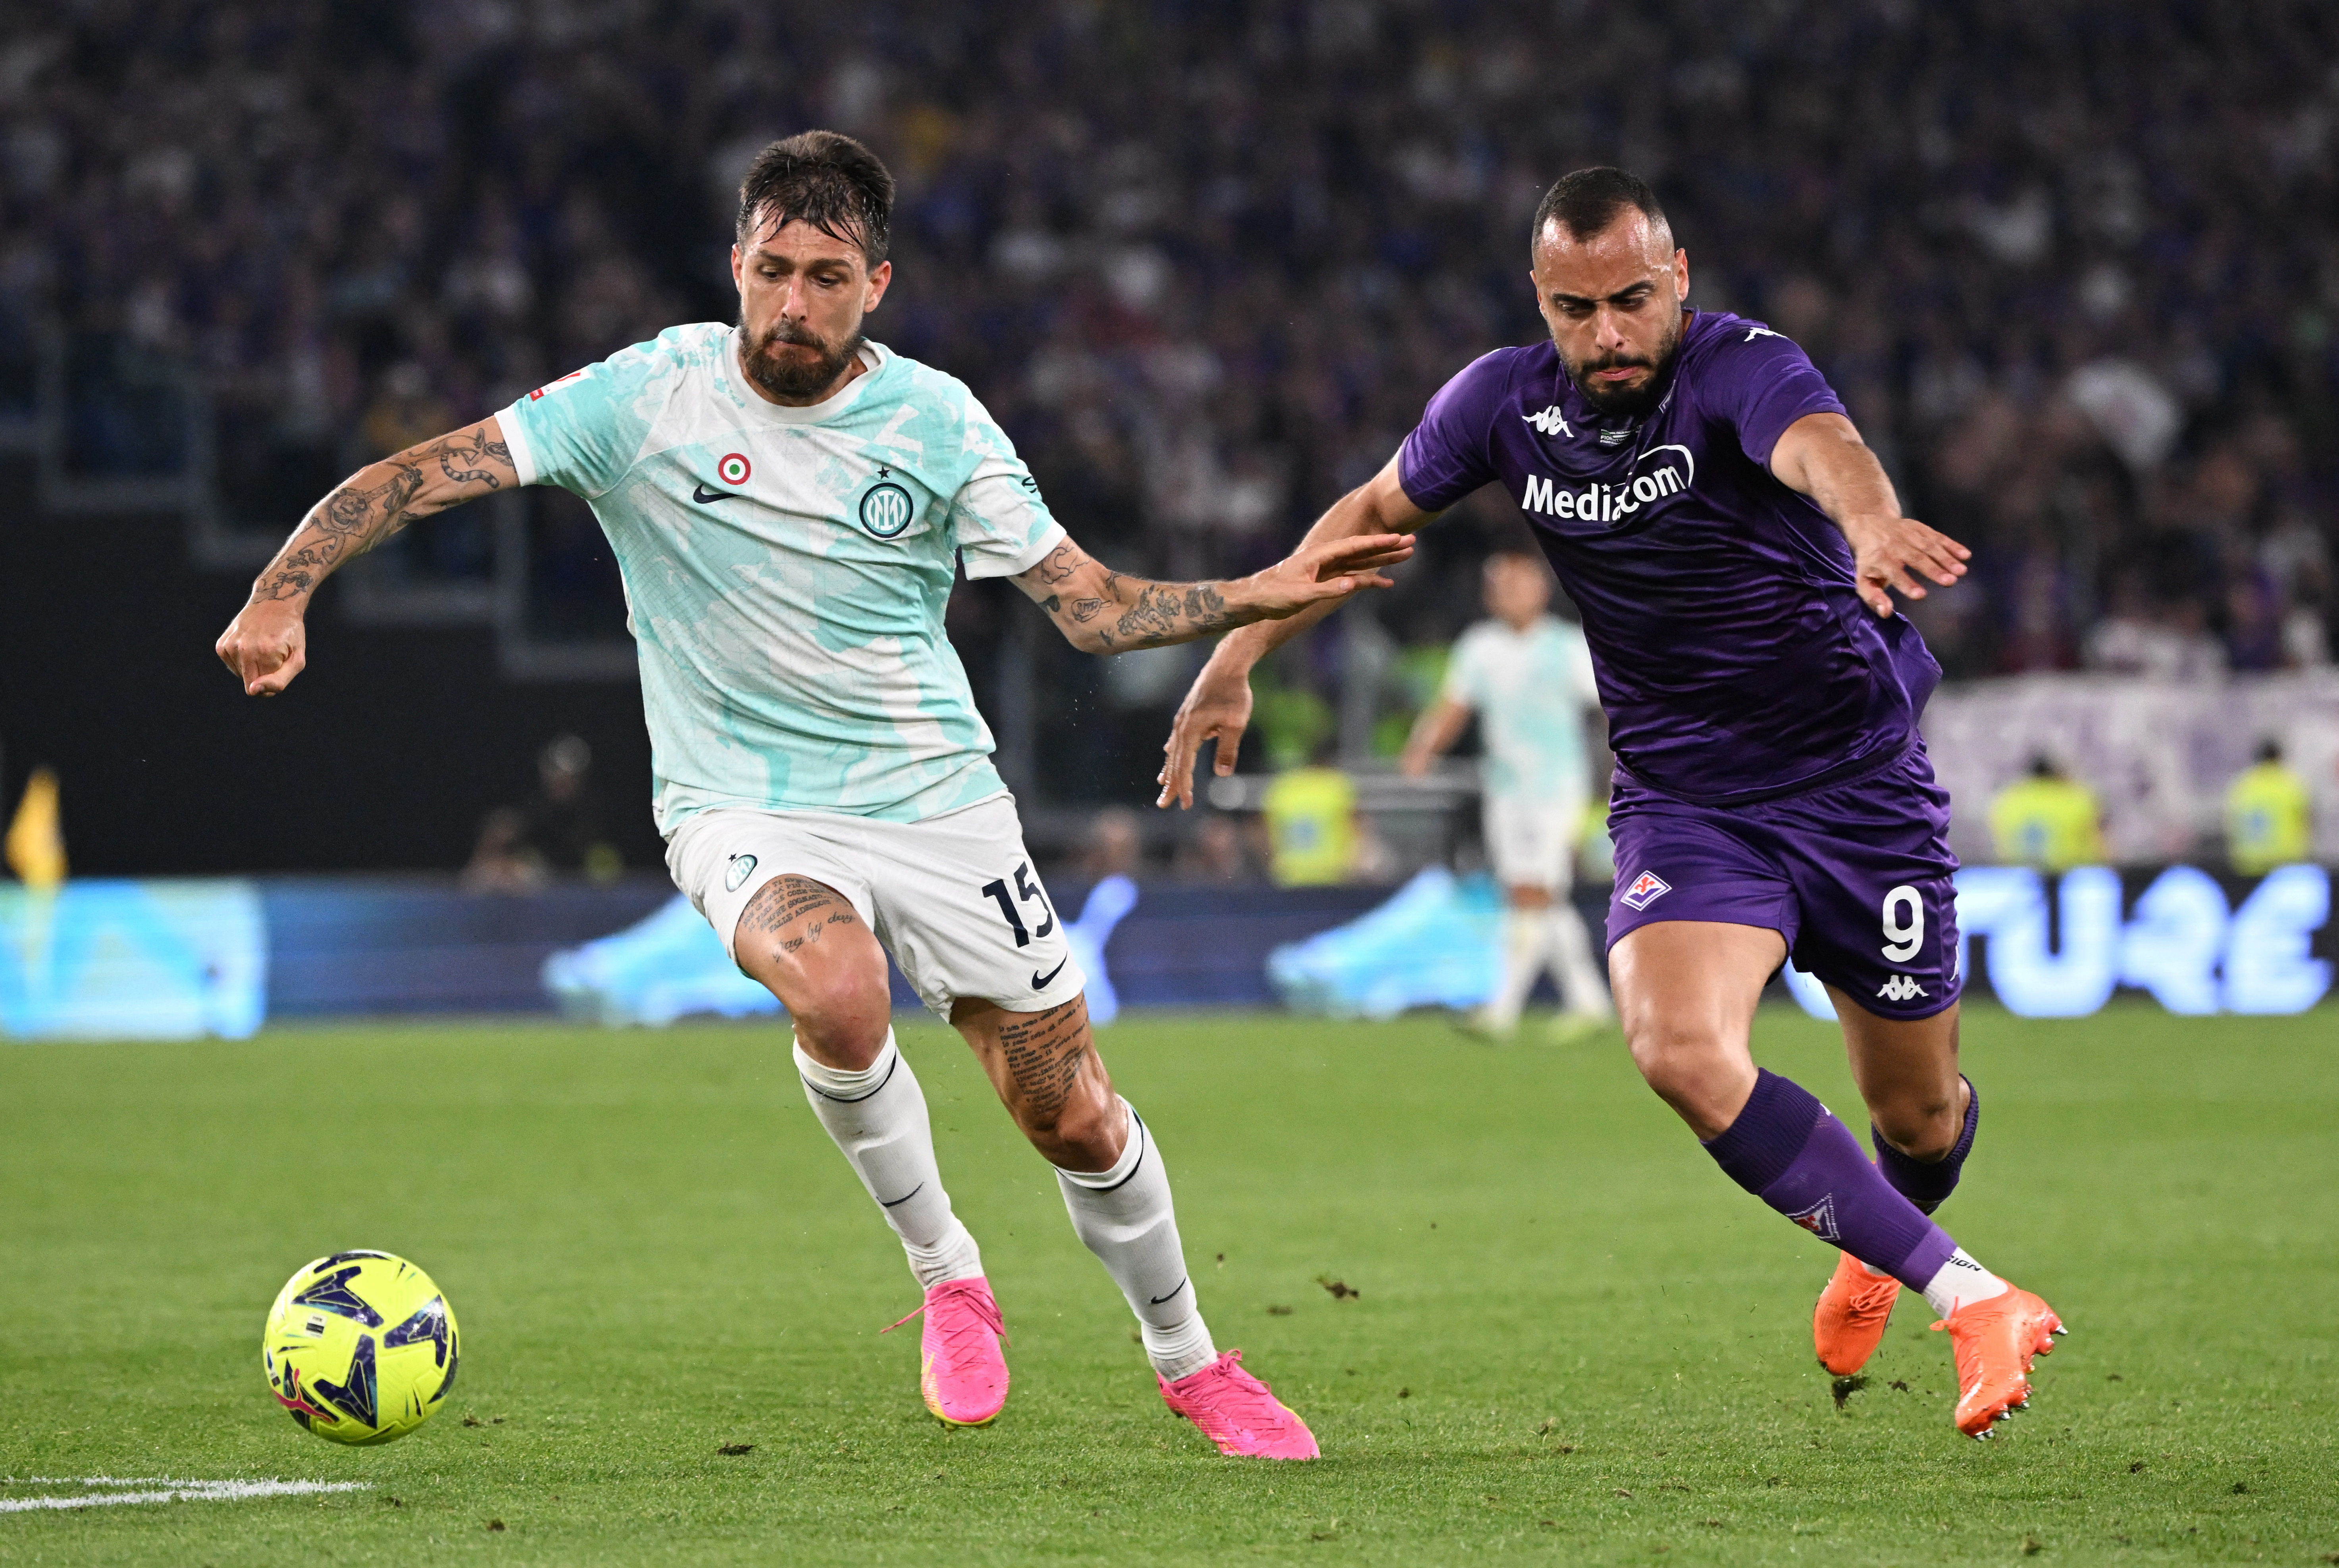 Coppa Italia - Final - Fiorentina v Inter Milan